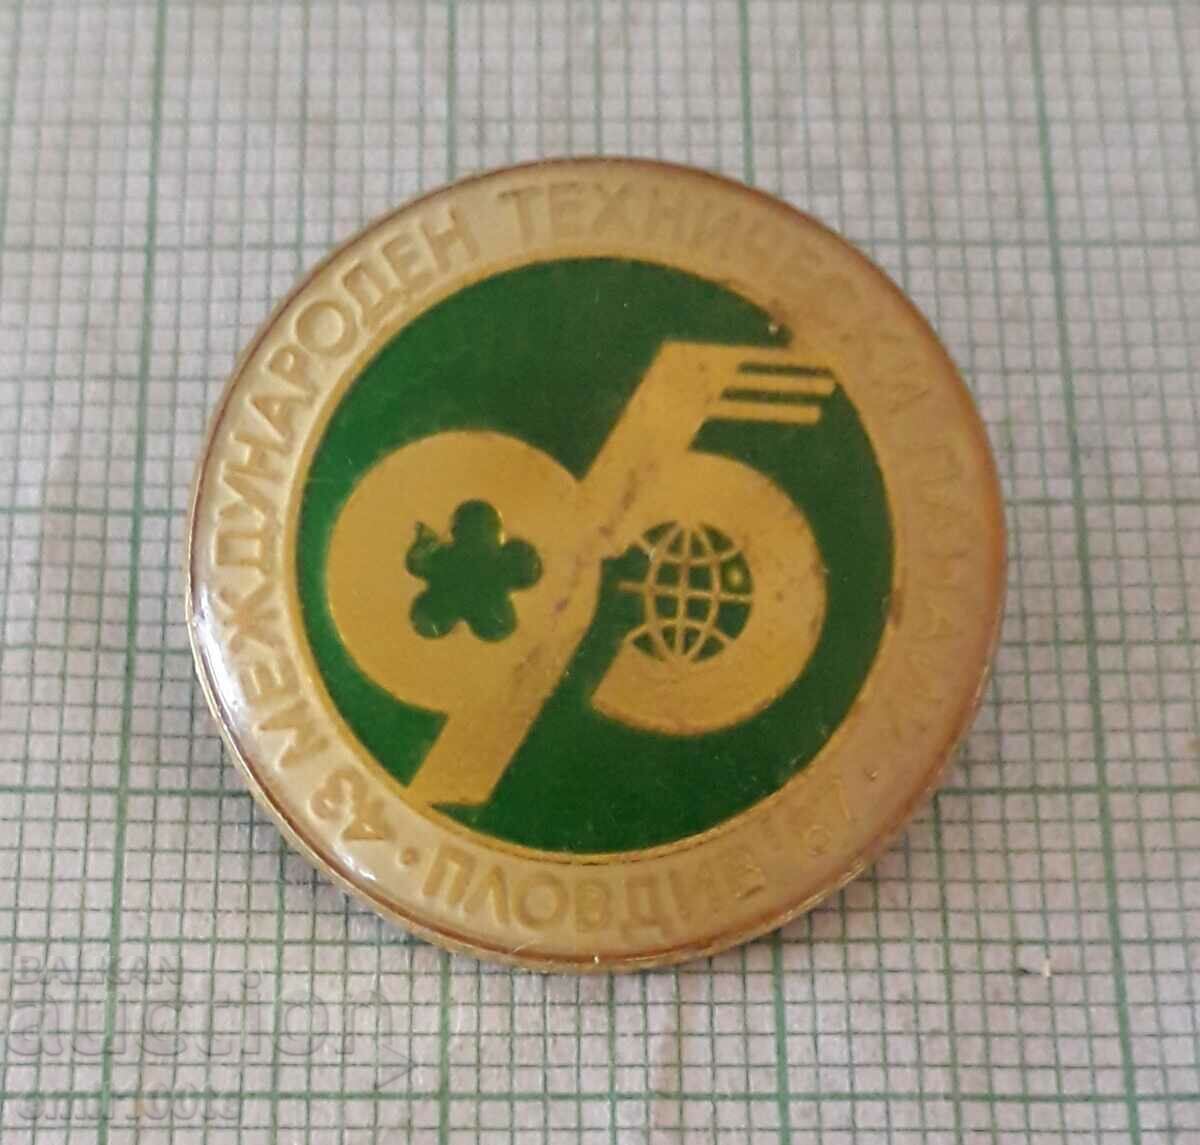 Badge - International Technical Fair Plovdiv 1987